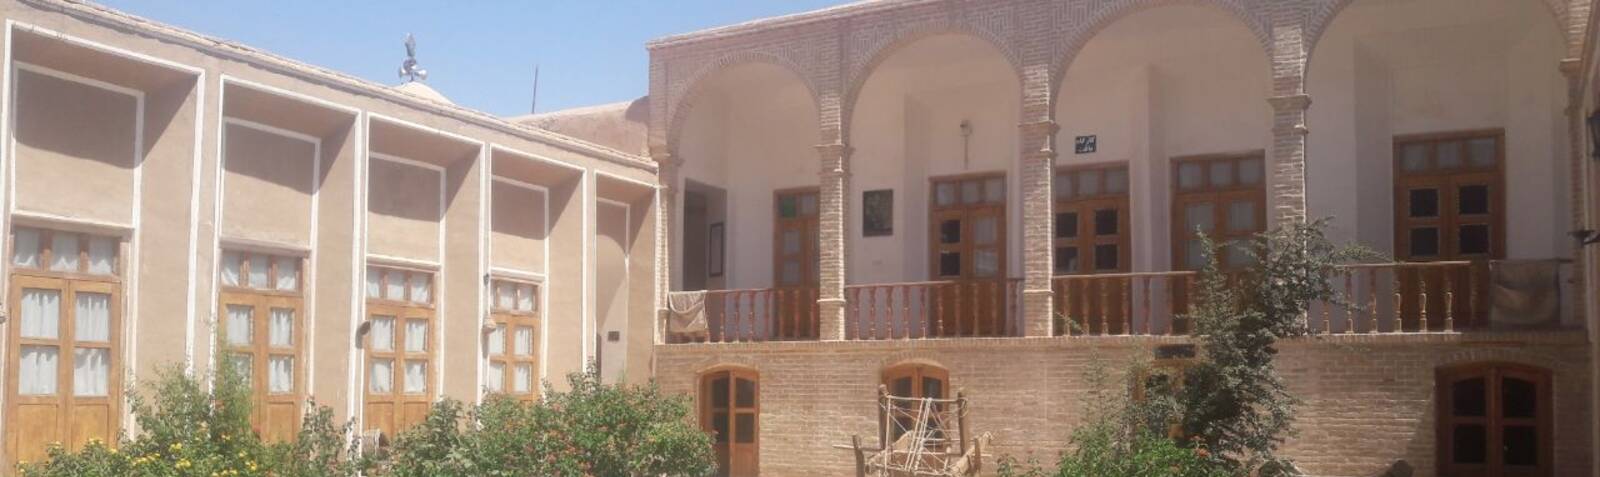 خانه تاریخی ملک افضلی(موزه فرش اردکان)